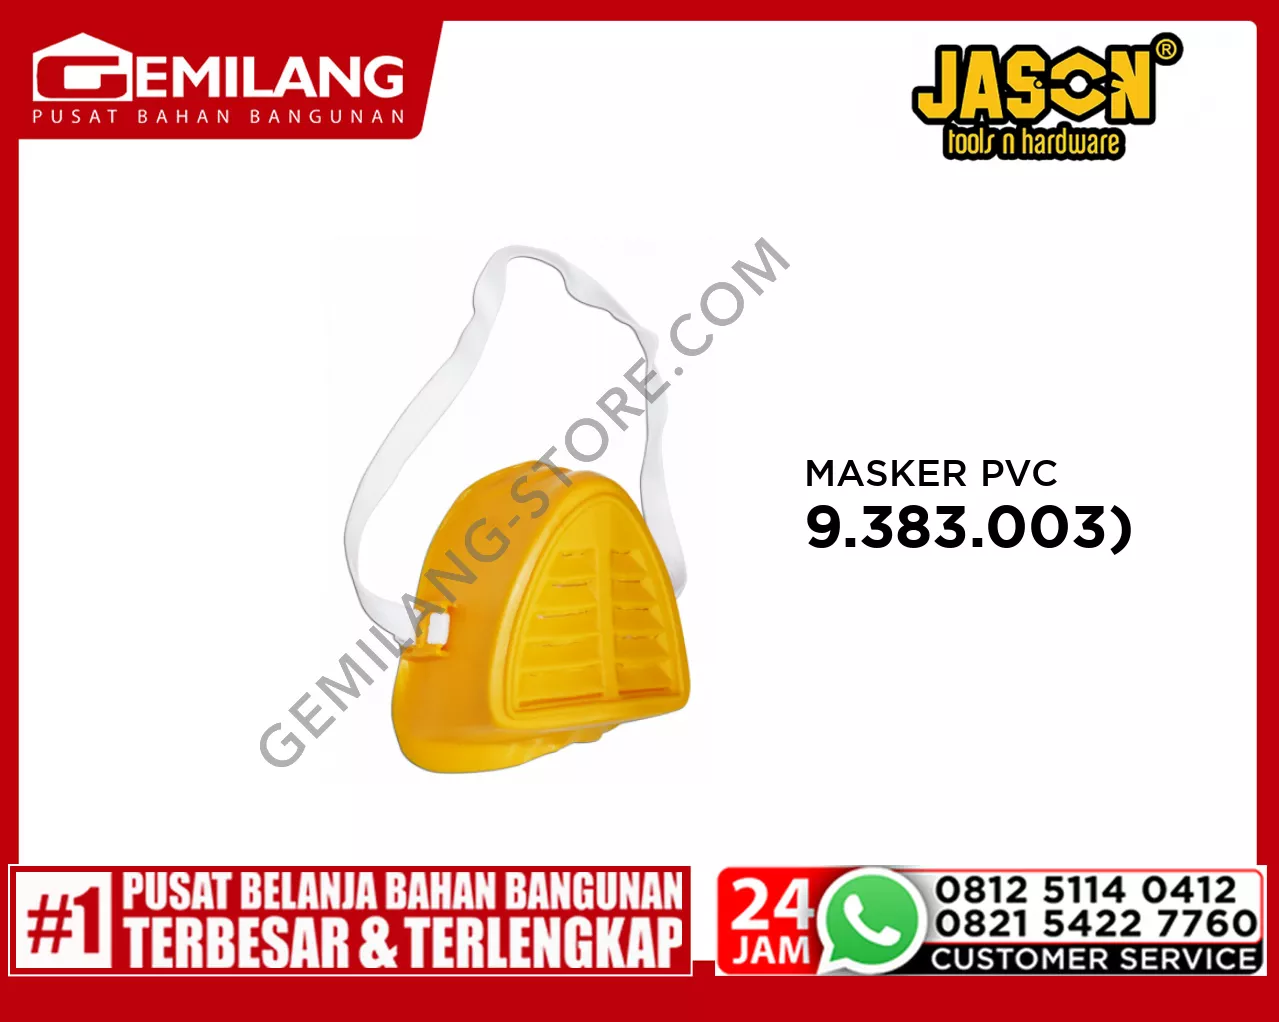 JASON MASKER KUNING PVC (9.383.003)